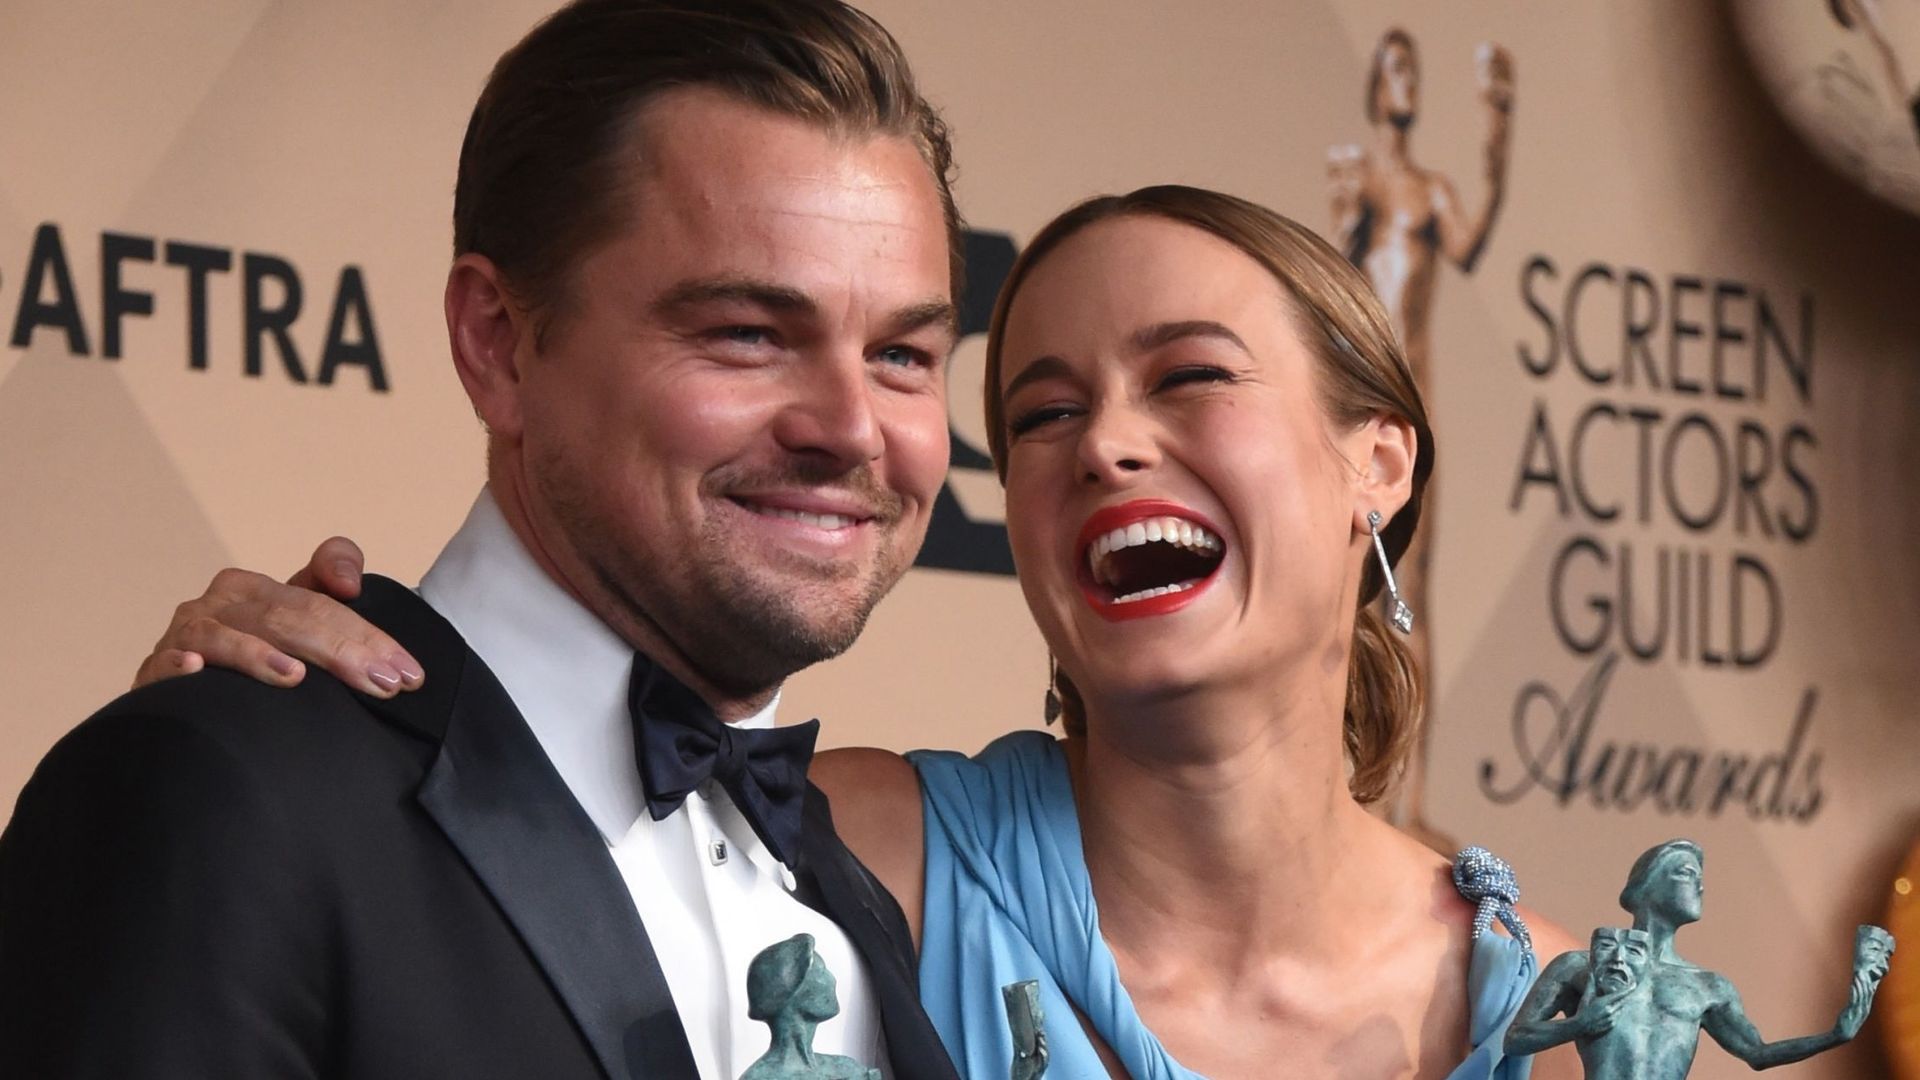 Leonardo DiCaprio et Brie Larson triomphent lors de SAG Awards marqués par la diversité